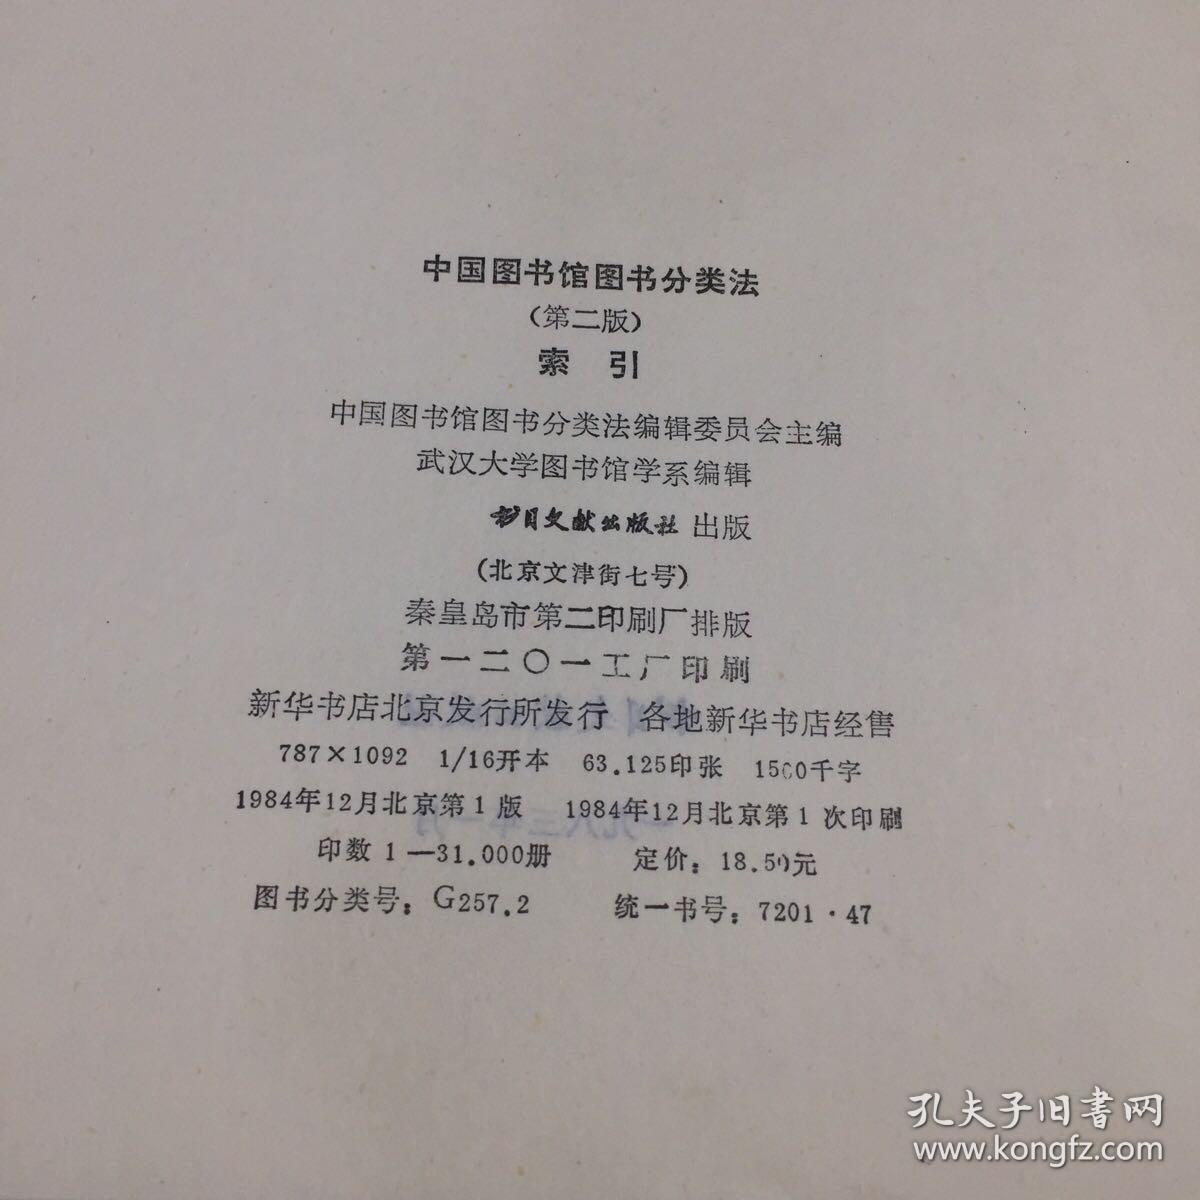 中国图书馆图书分类法第二版索引 书脊有馆藏贴